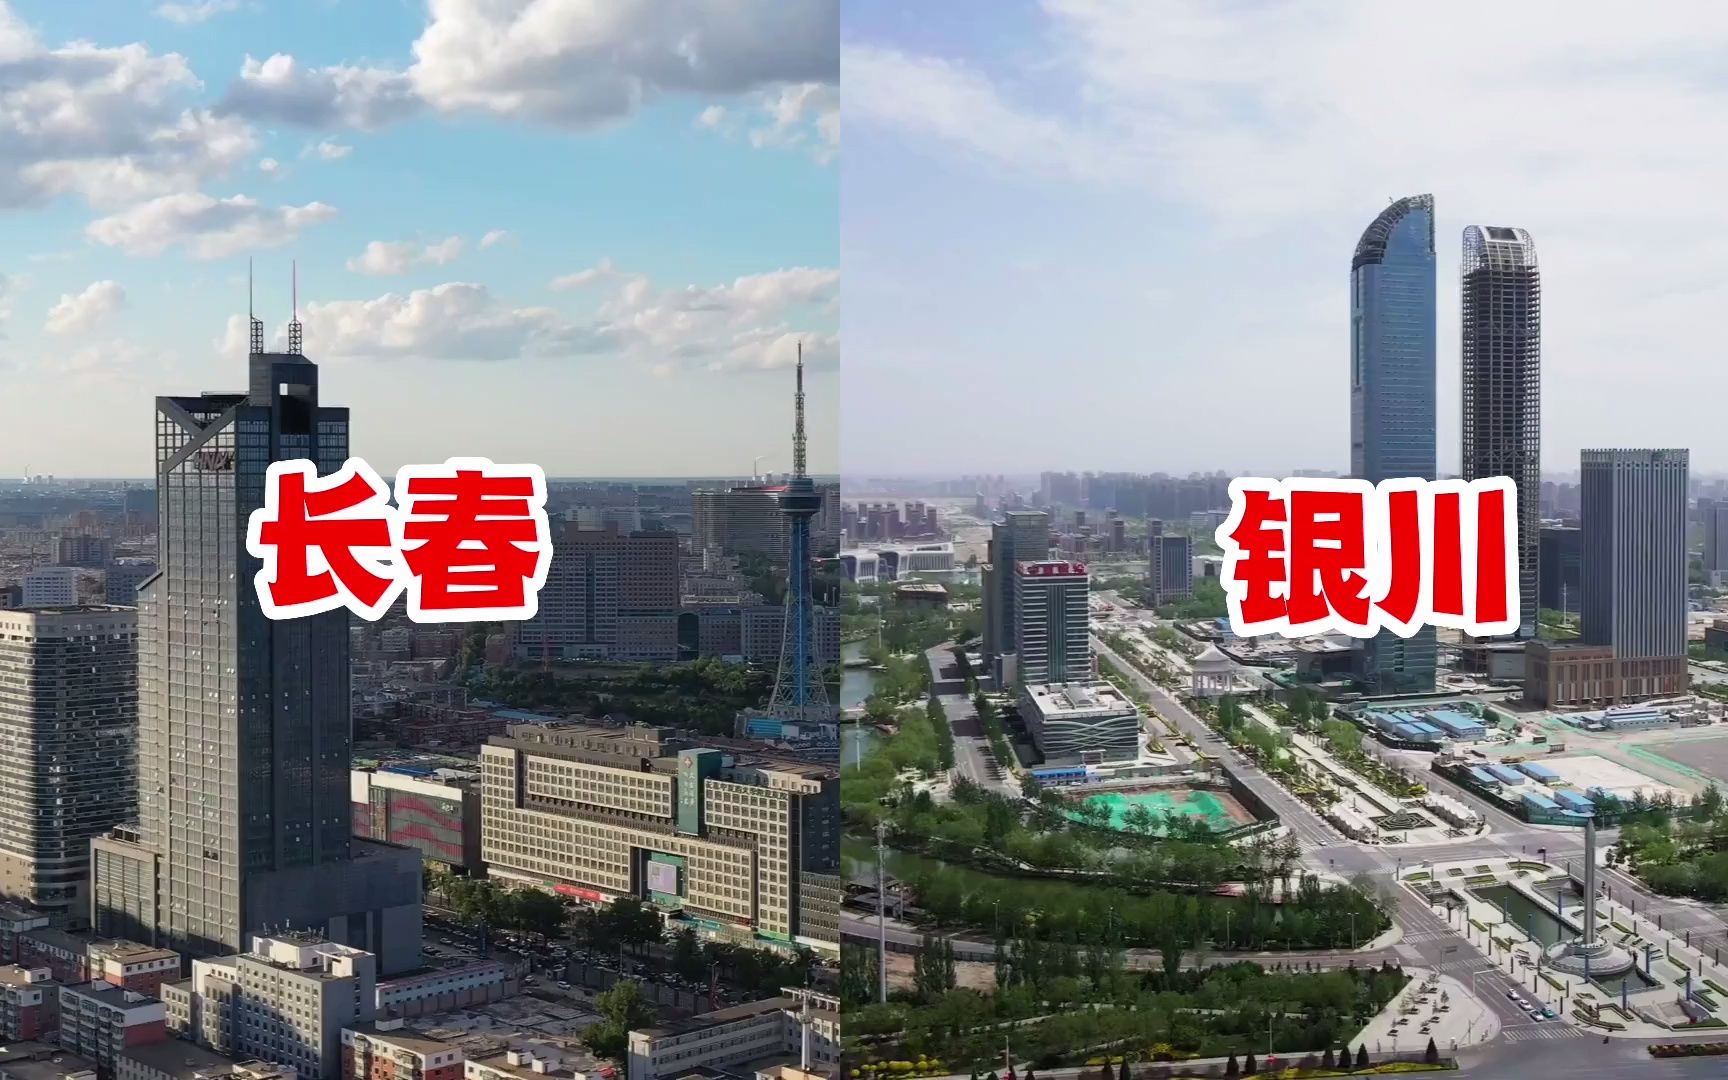 【城建对比】长春VS银川，两座人均GDP几乎一致的省城，一个是北国春城，一个是塞上江南，你觉得谁的城建更漂亮？